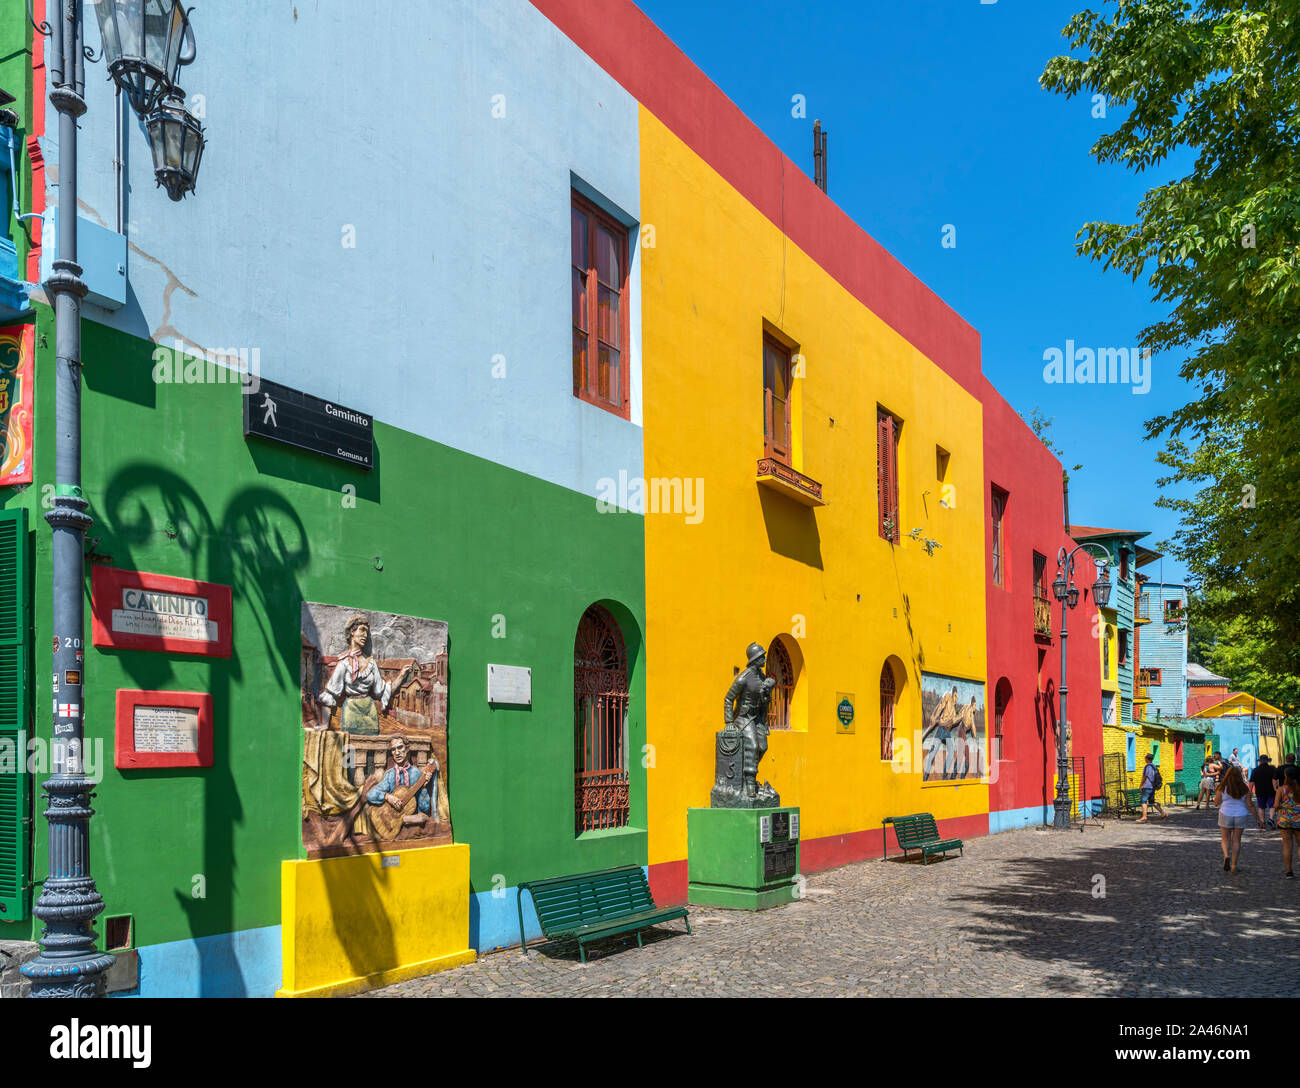 Farbenfrohe Gebäude in El Caminito, eine Straße im Viertel La Boca in Buenos Aires, Argentinien Stockfoto